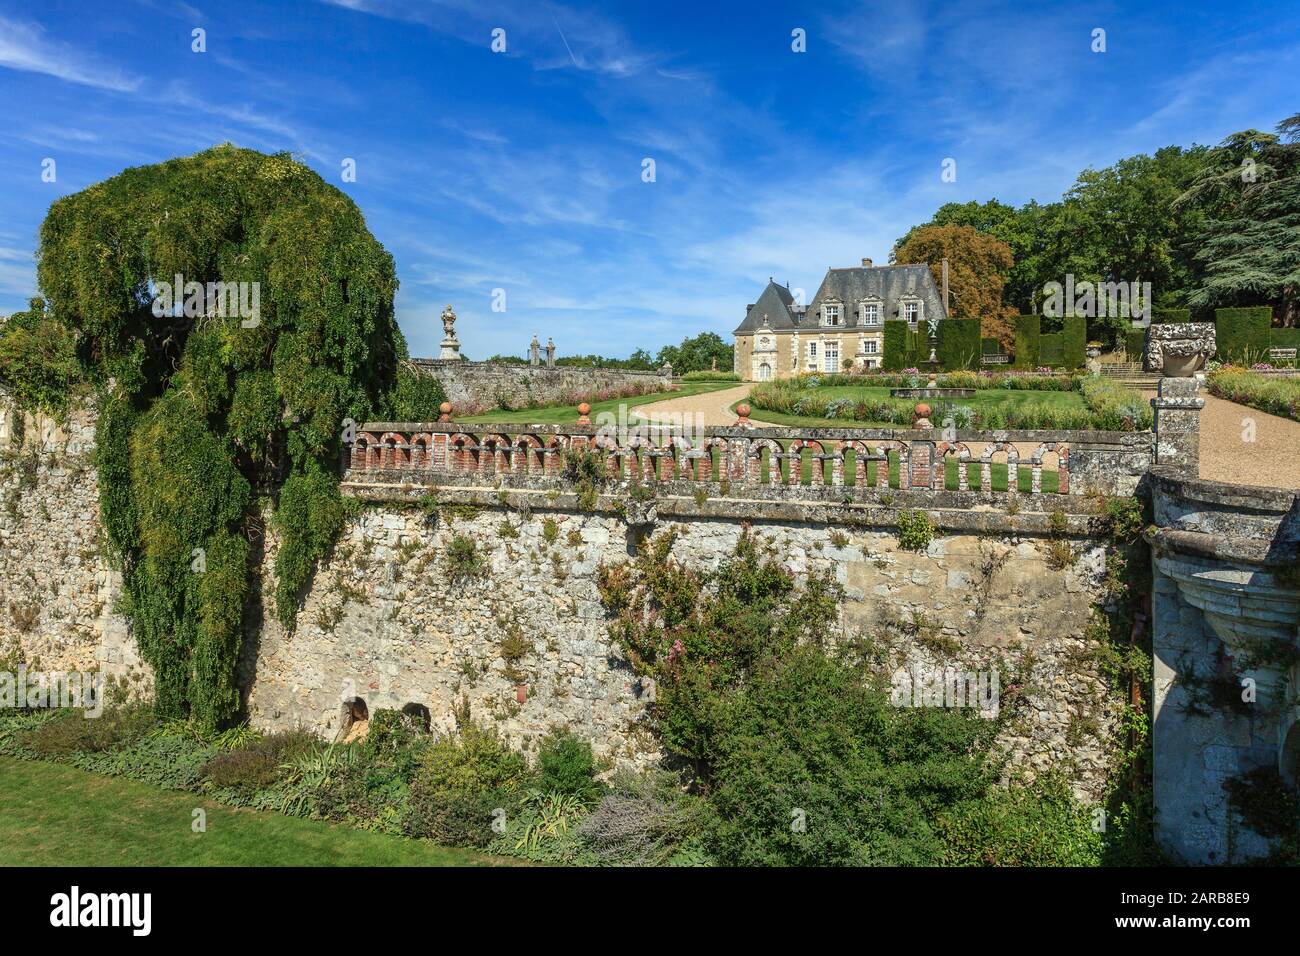 Francia, Indre et Loire, Chancay, Chateau de Valmer giardini, fossati del castello e sophora piangere (Styphnolobium japonicum 'Pendula') (menzione obbligatoria C Foto Stock